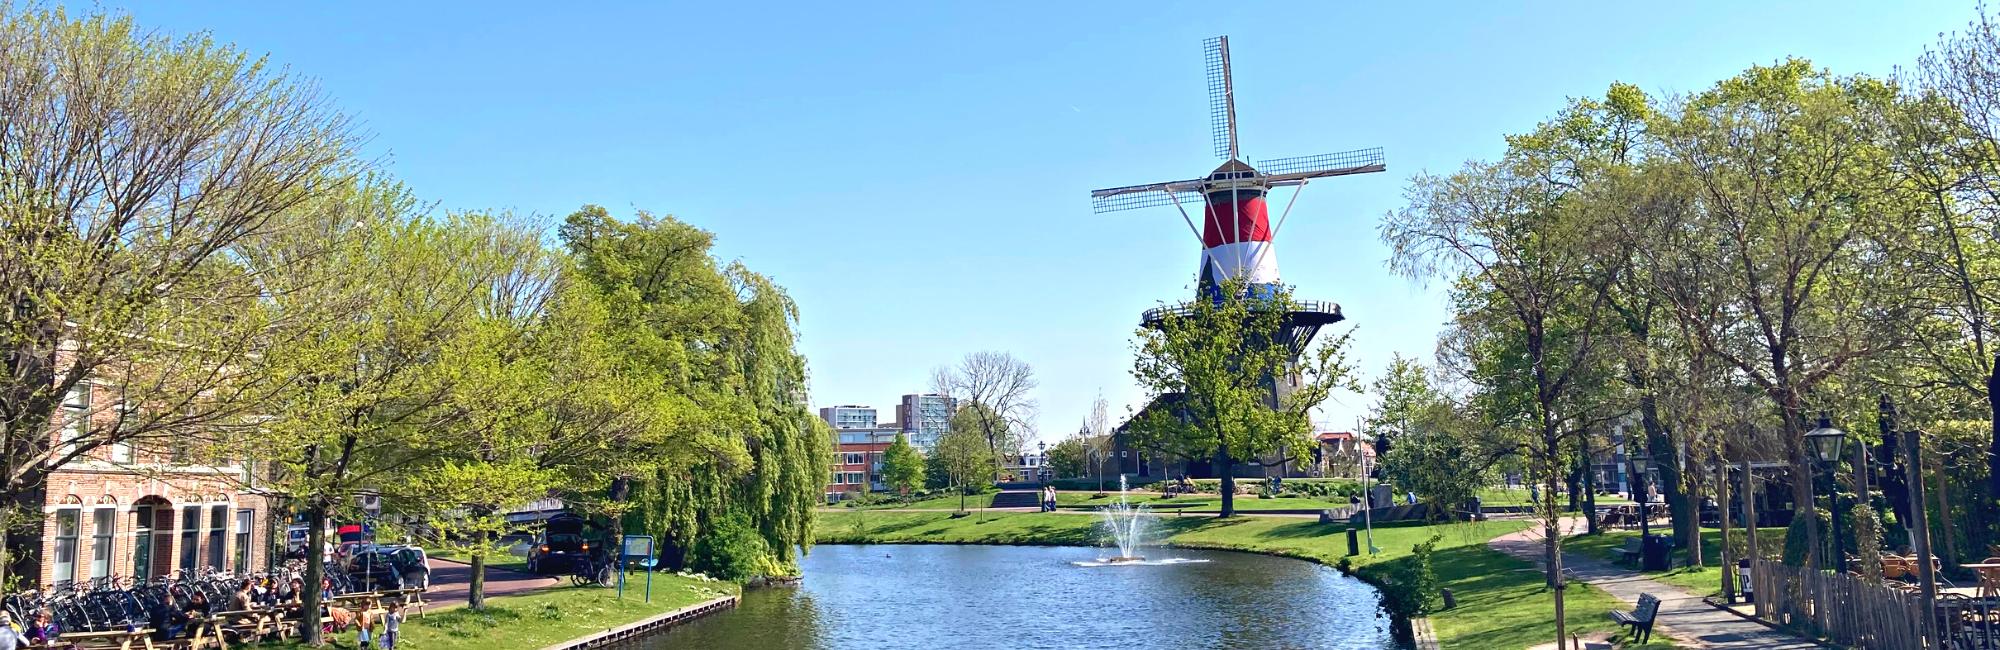 Canale con una fontana sulla destra e un mulino con la bandiera dei Paesi Bassi in fondo